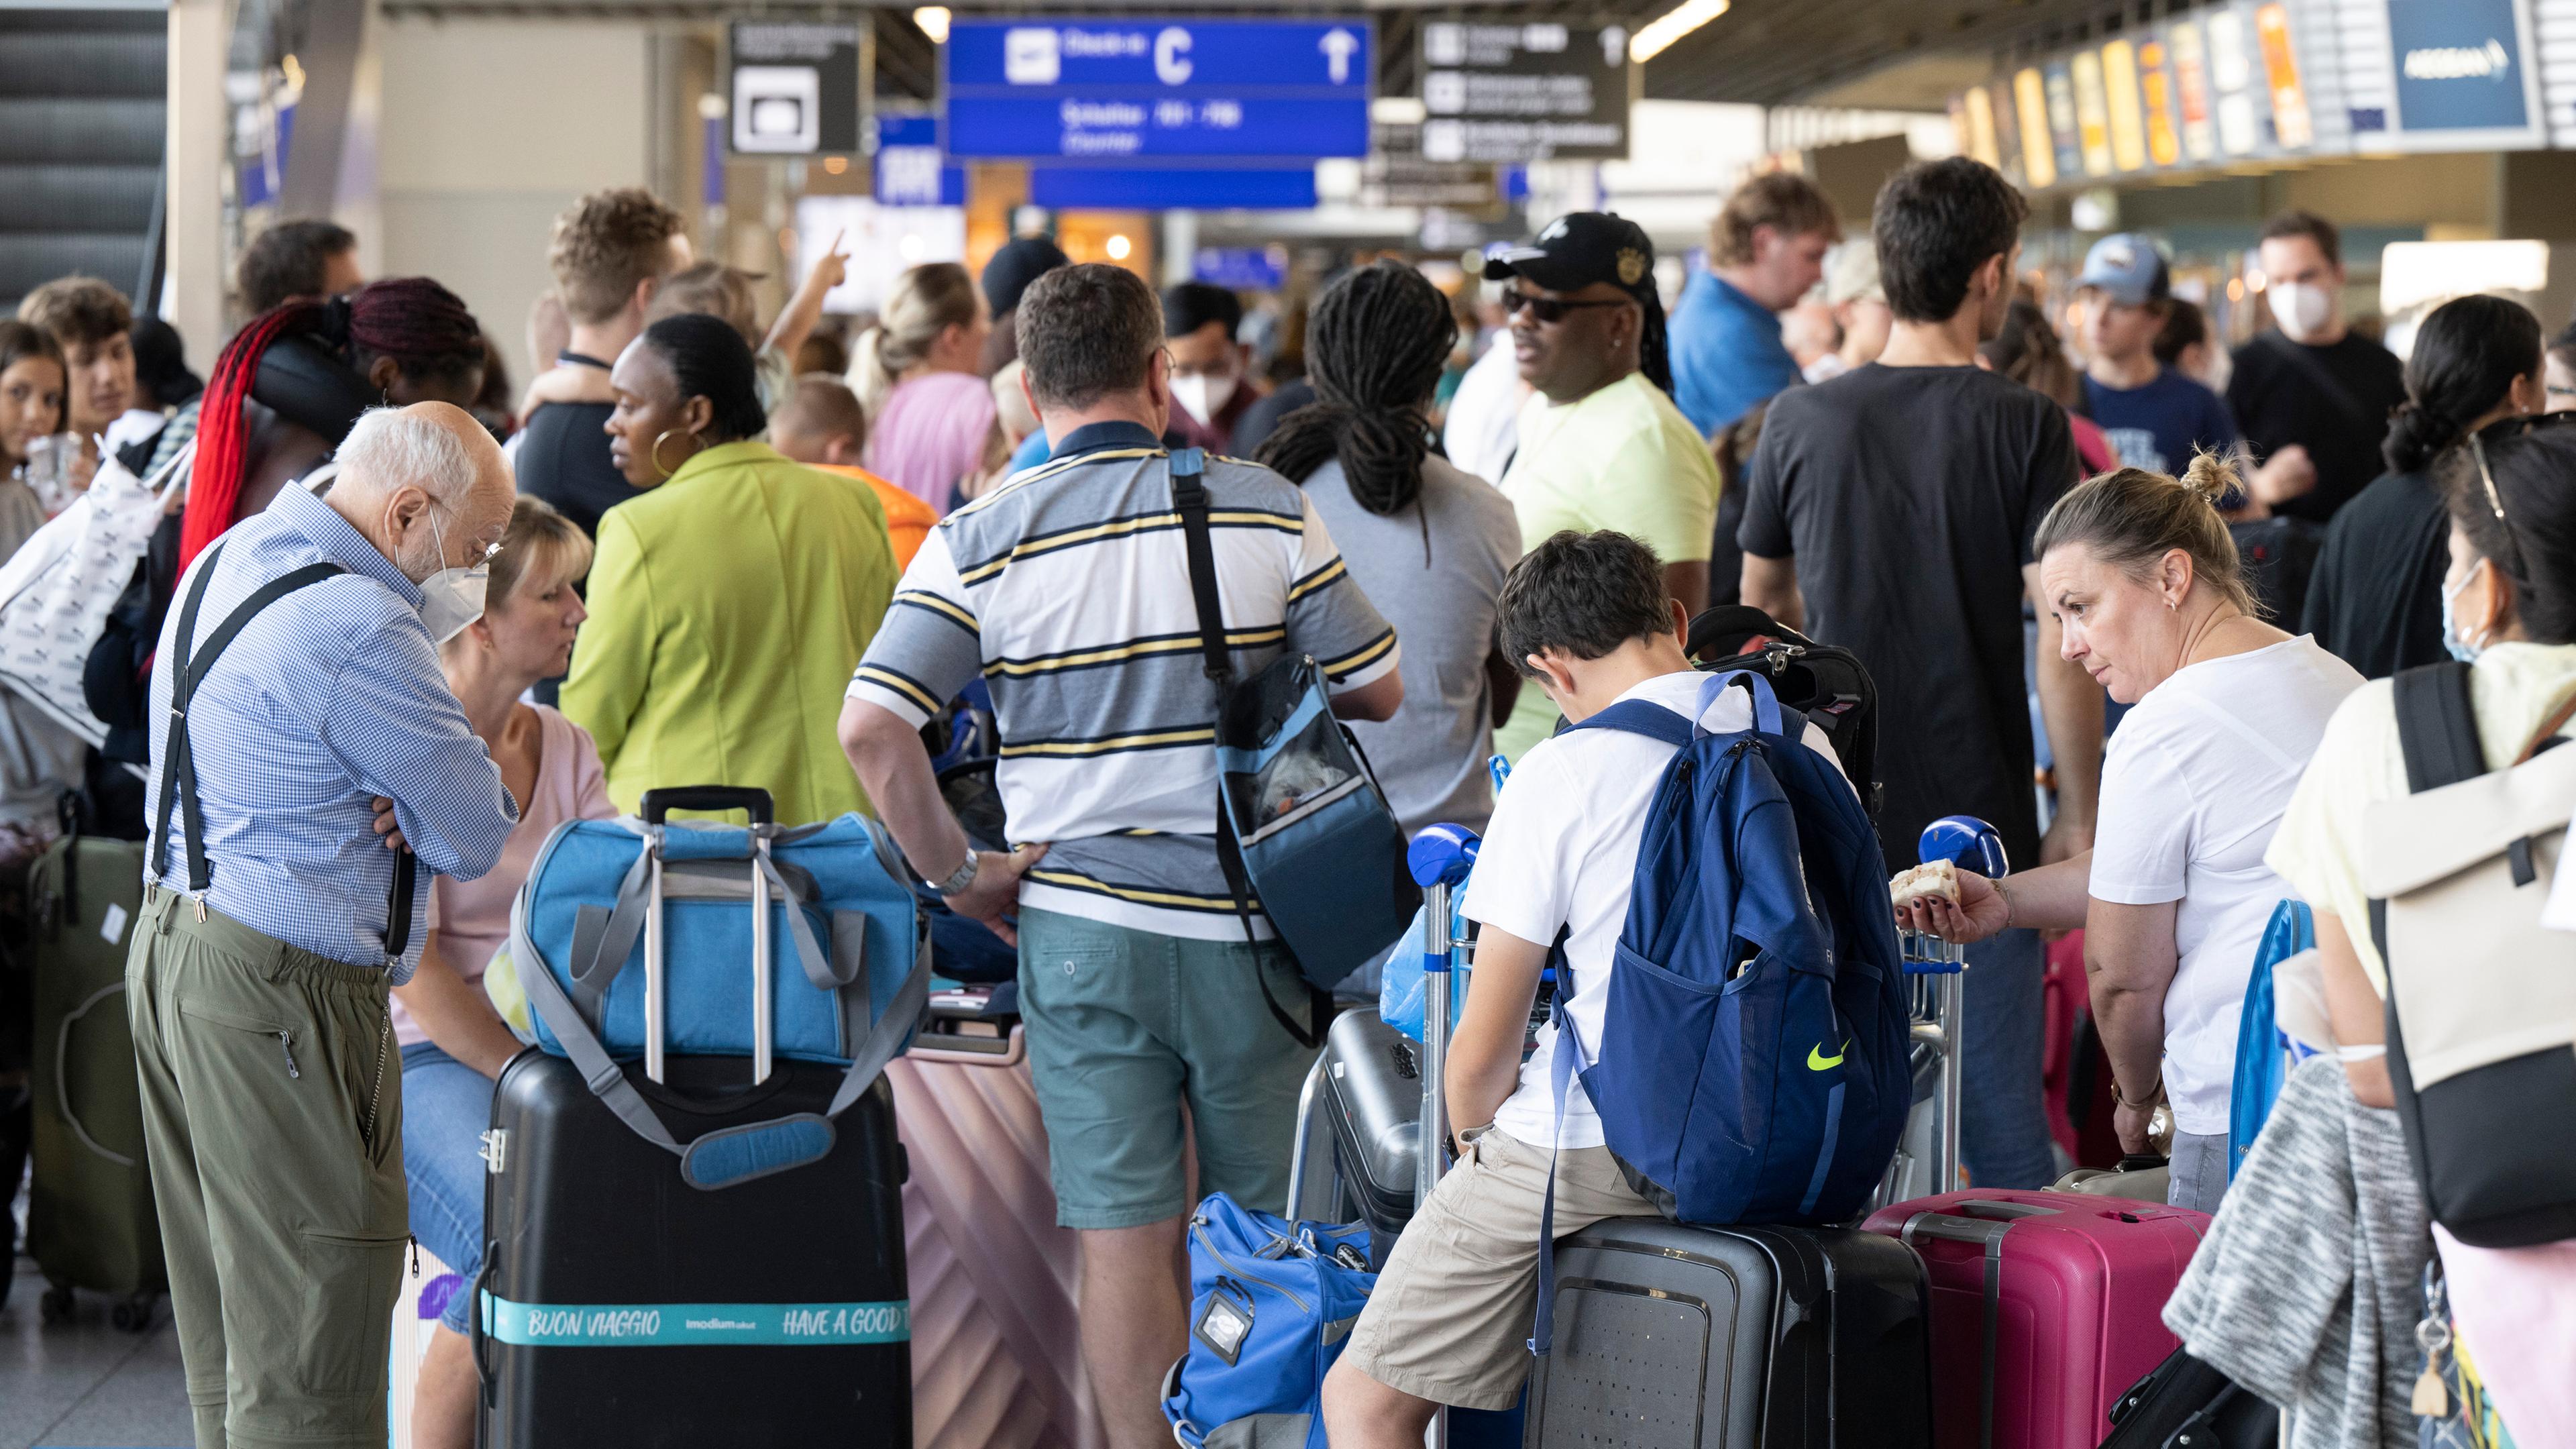 Tausende Passagiere warten vor den Abfertigungsschaltern des Flughafens auf ihren Check-In in Frankfurt am Main am 22.07.2022